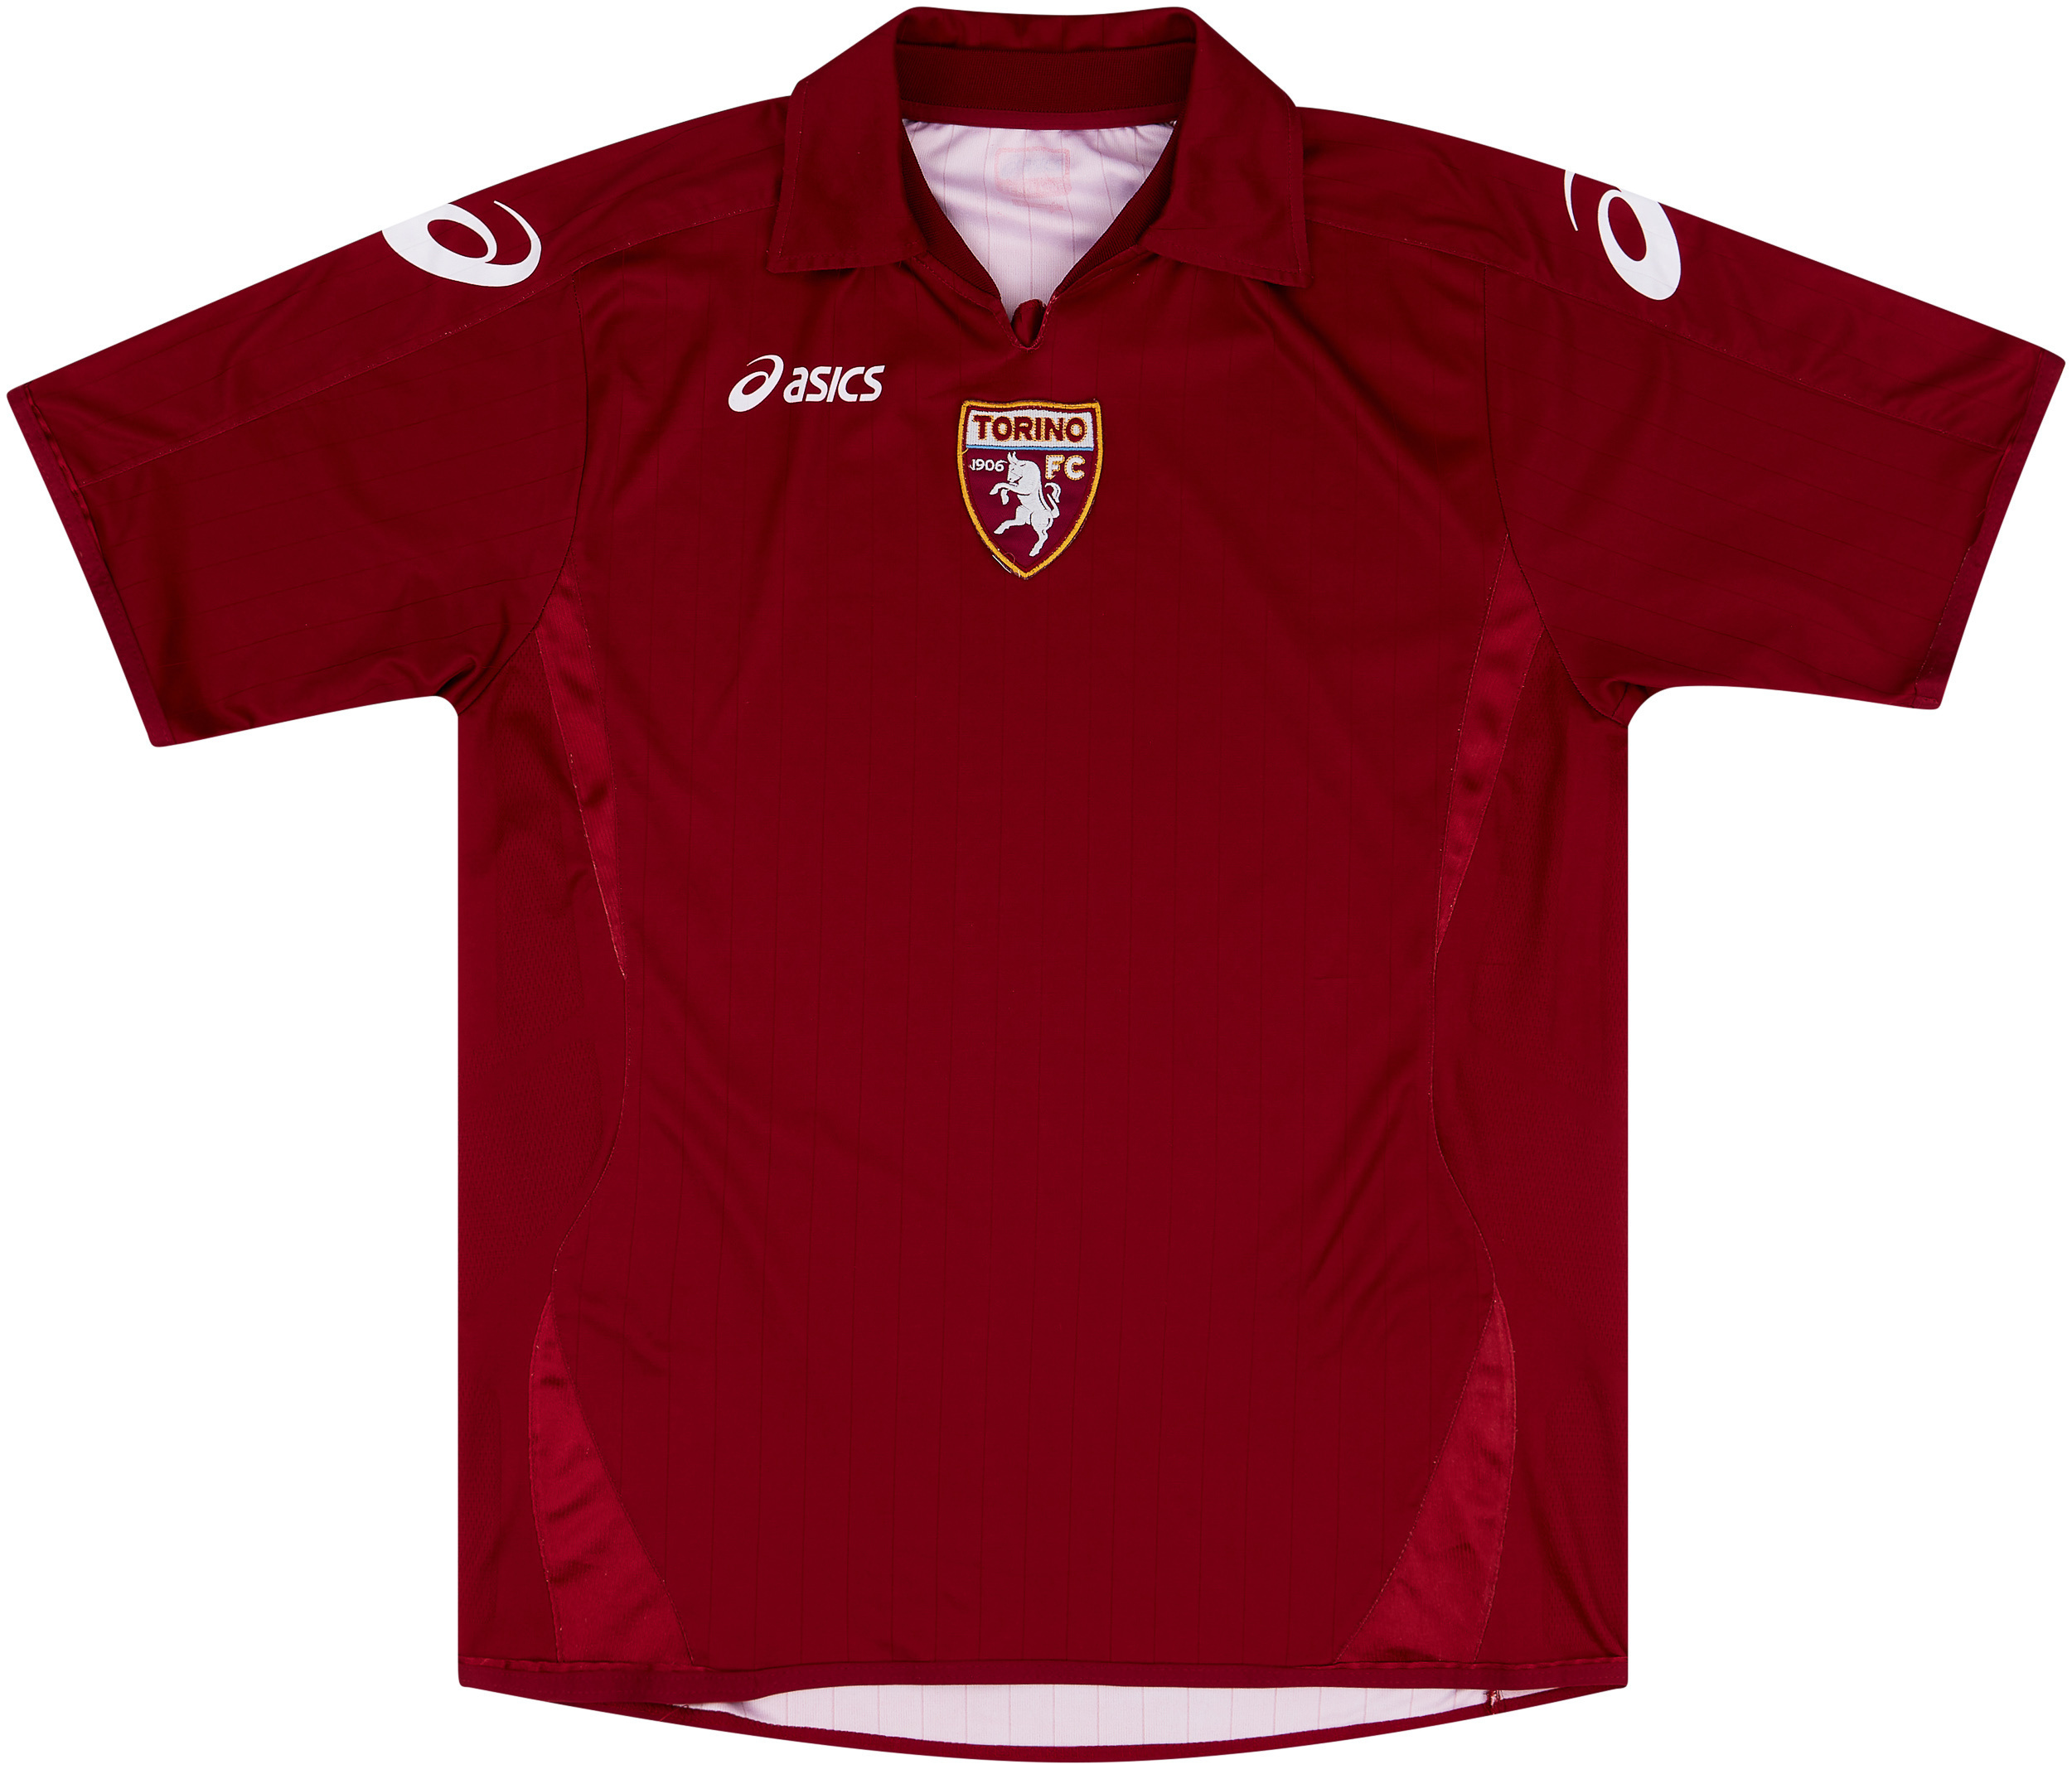 Torino  home camisa (Original)